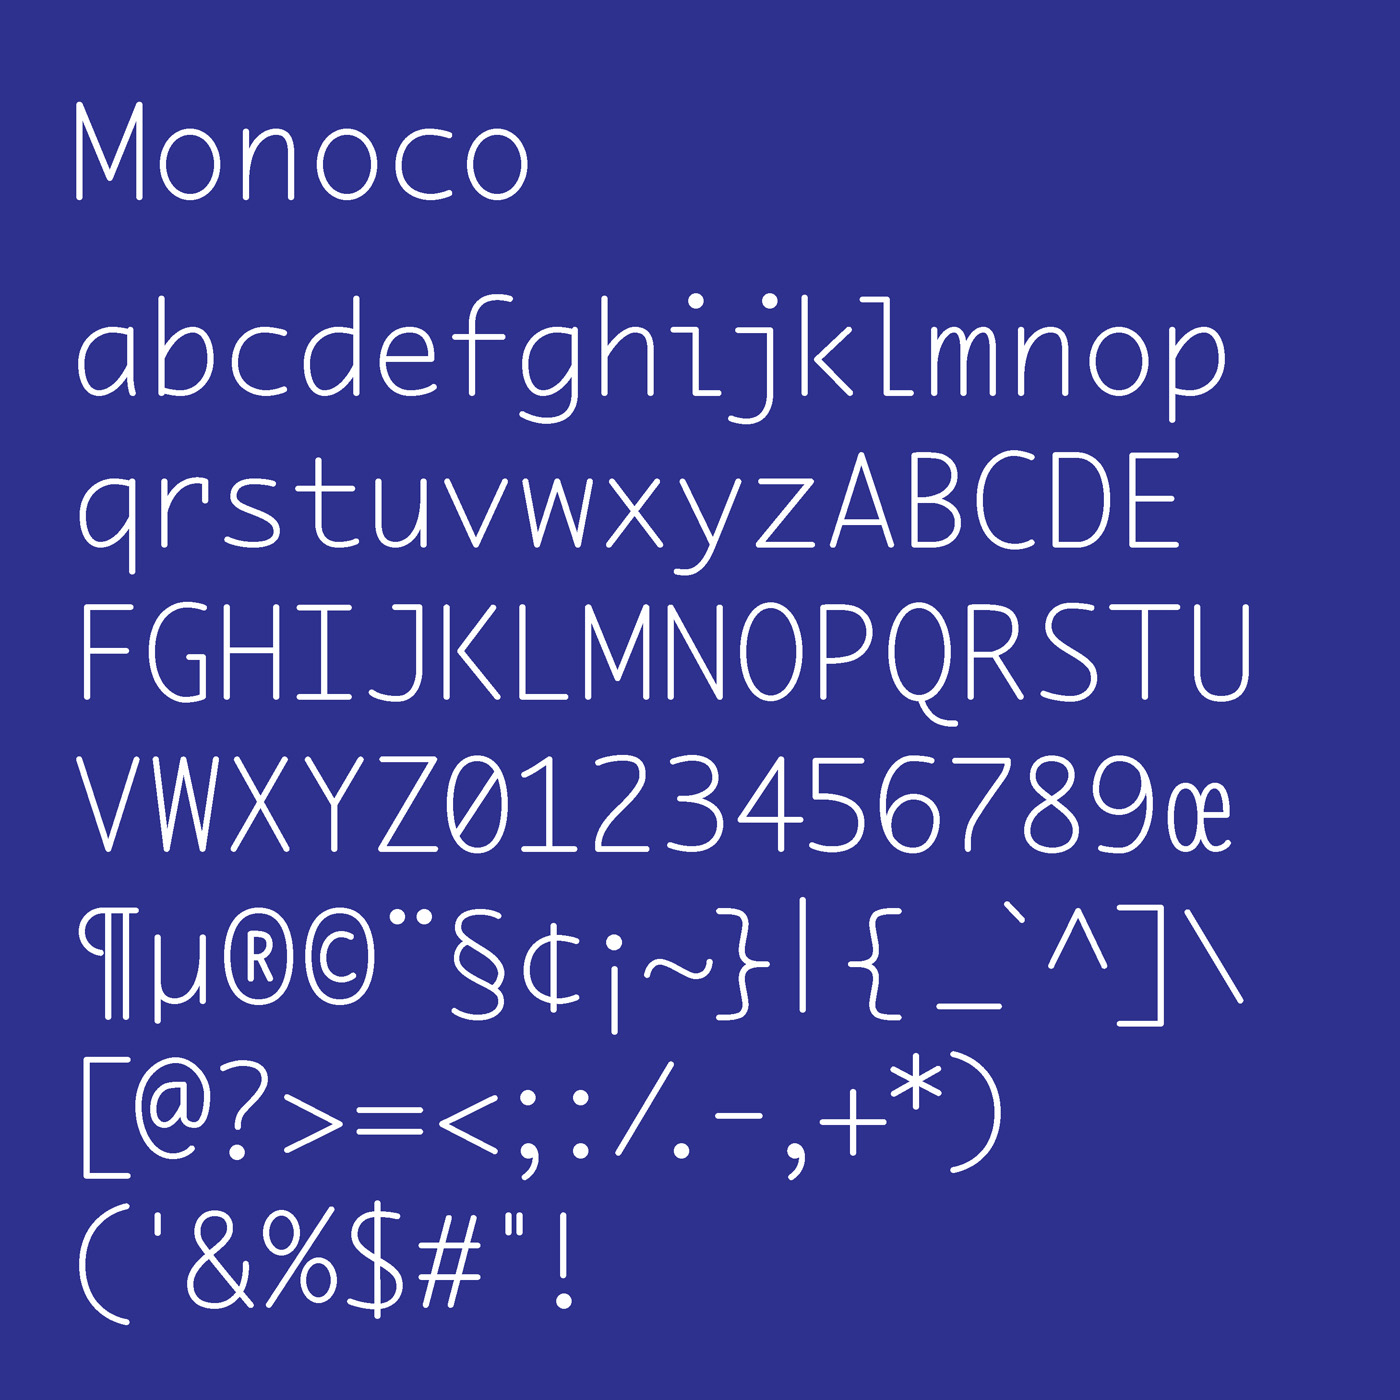 Monoco typeface designed by Thomas Bush